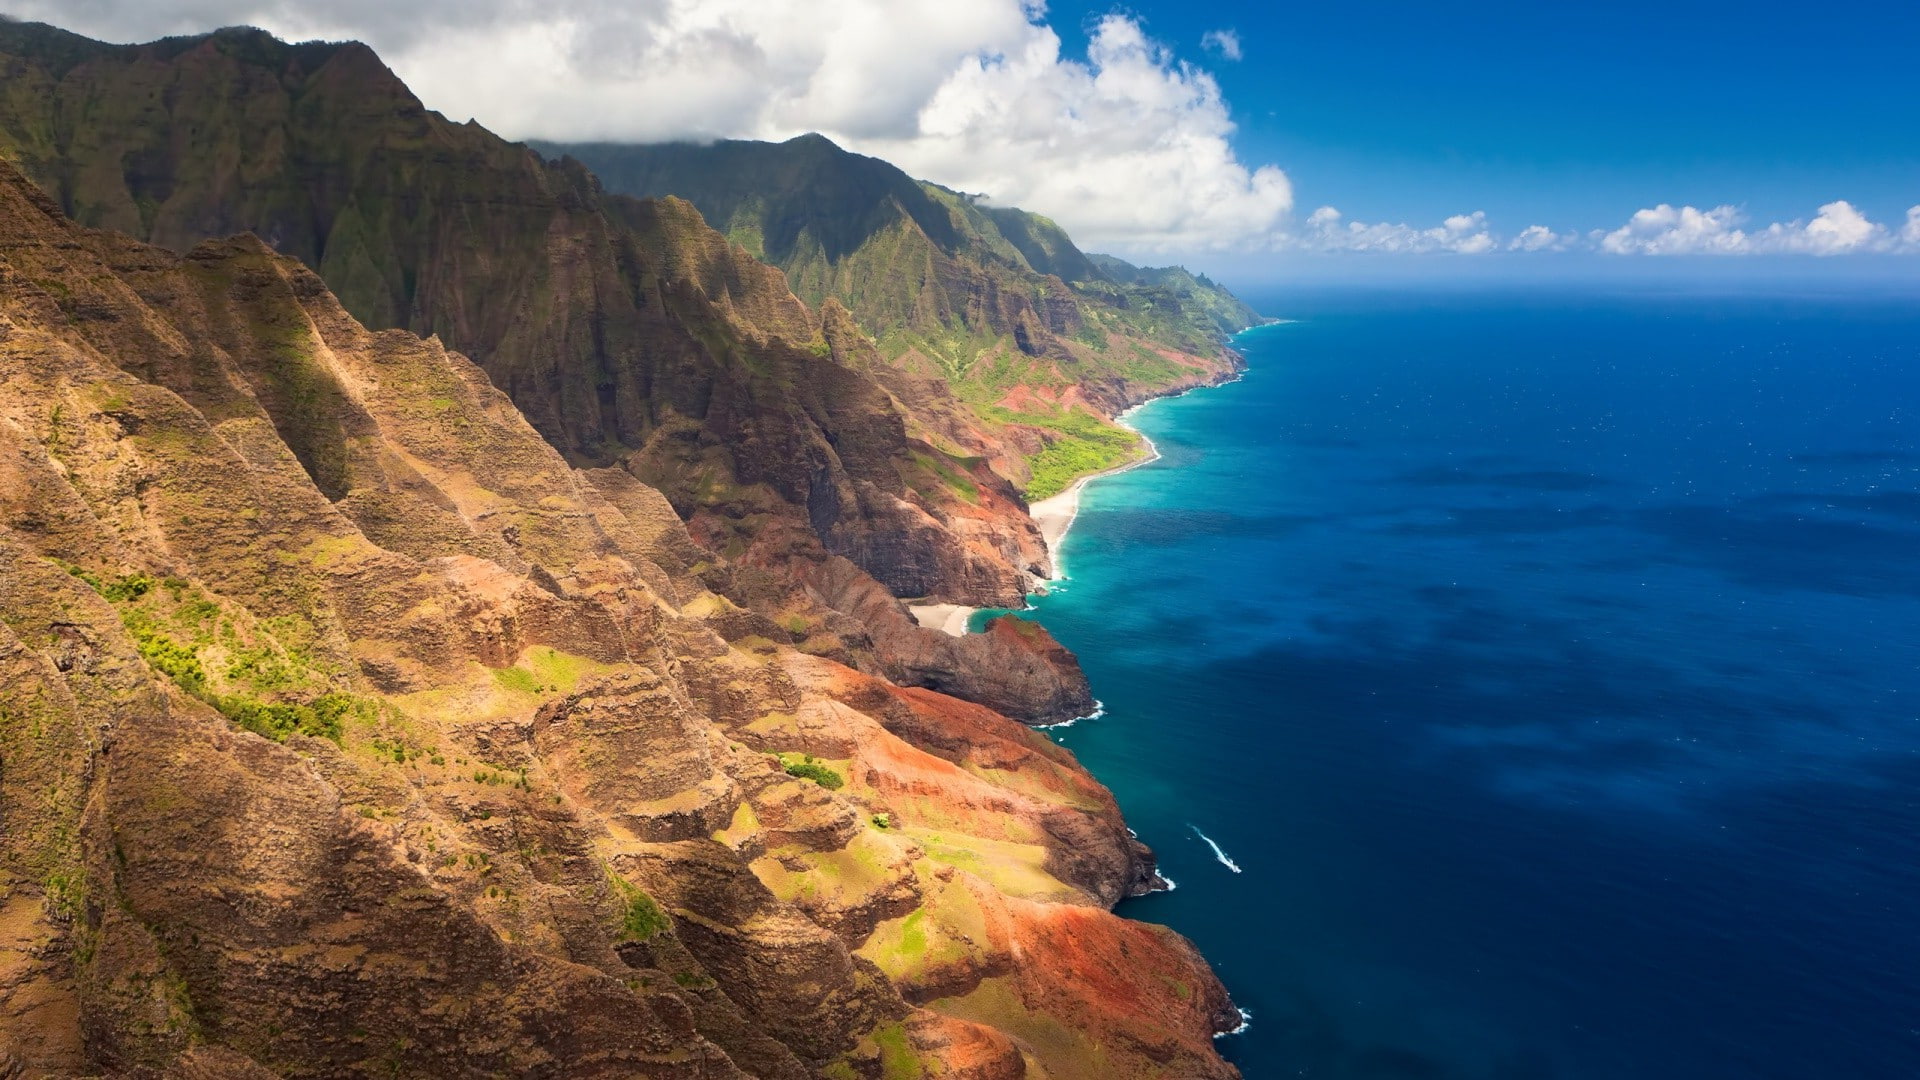 landscape na pali coast coast sea hawaii, scenics - nature